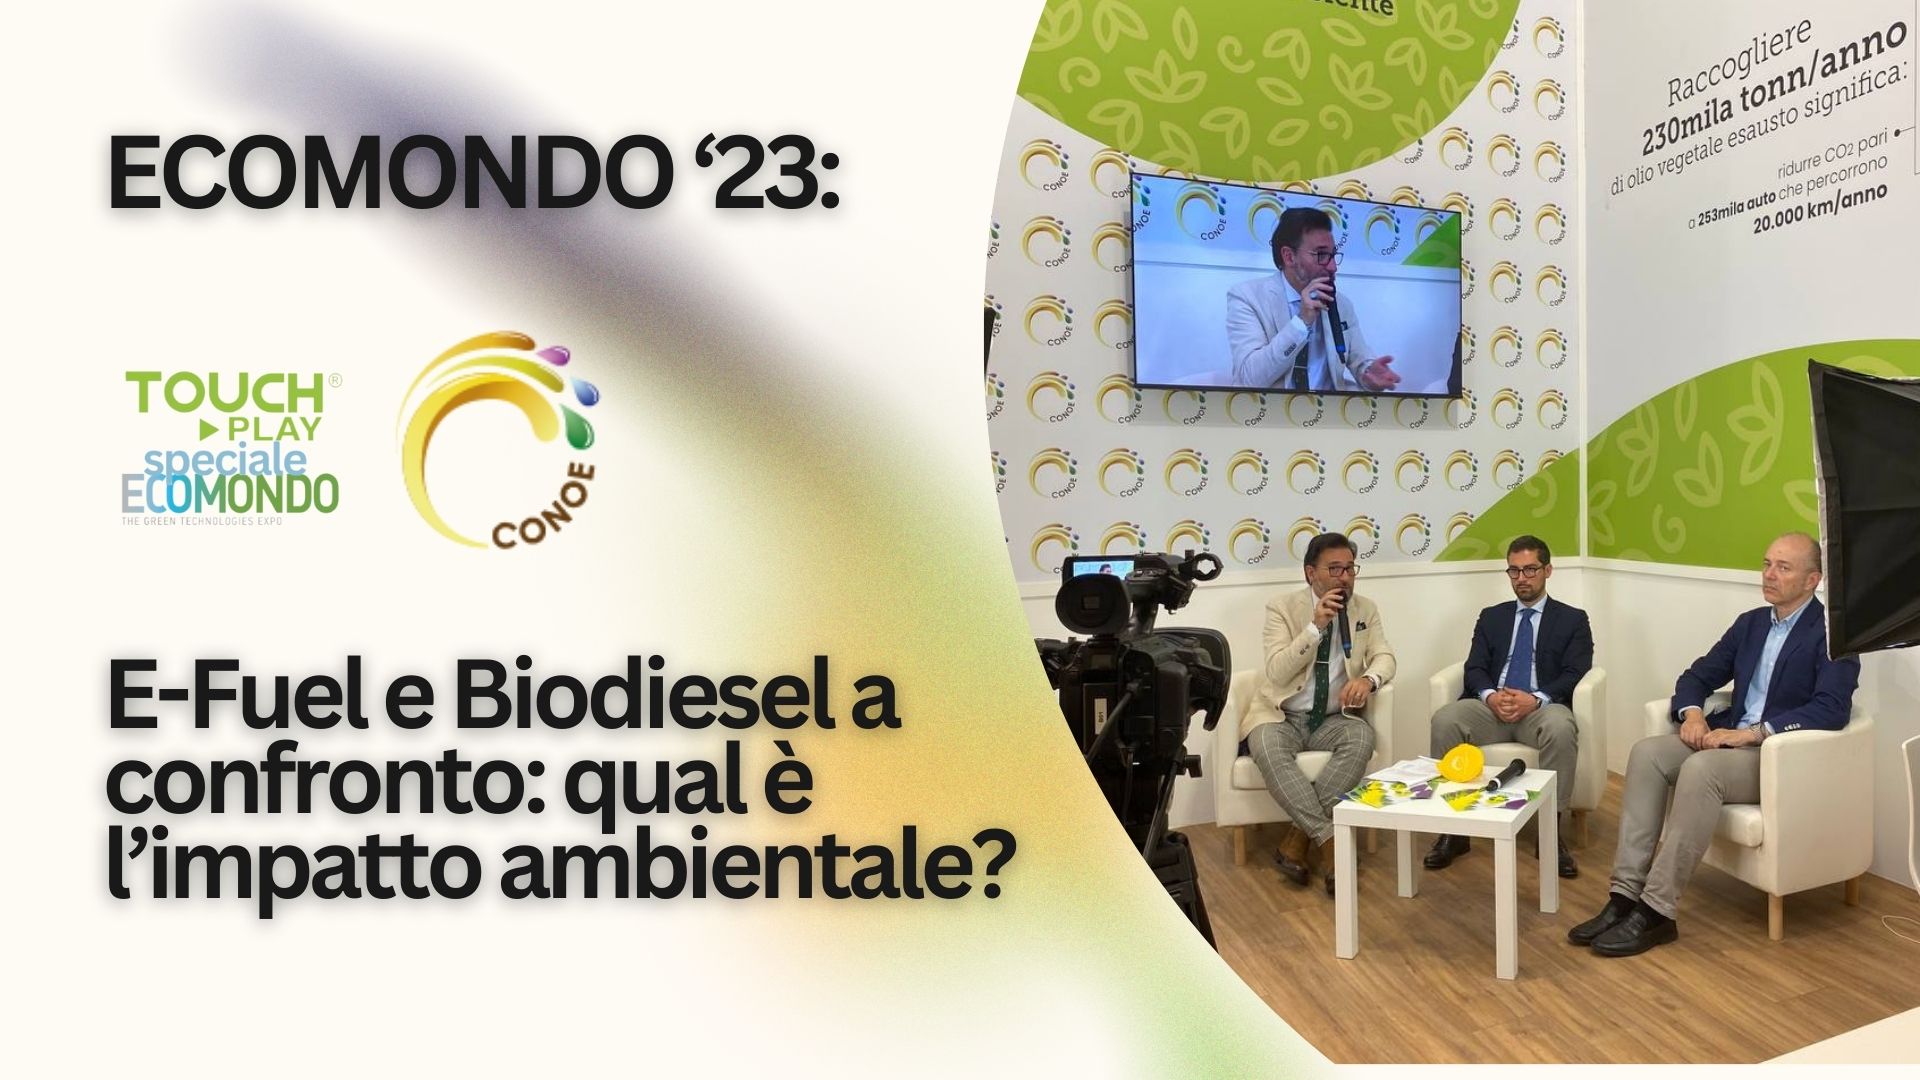 E-Fuel e Biodisel a confronto: qual’è l’impatto ambientale?